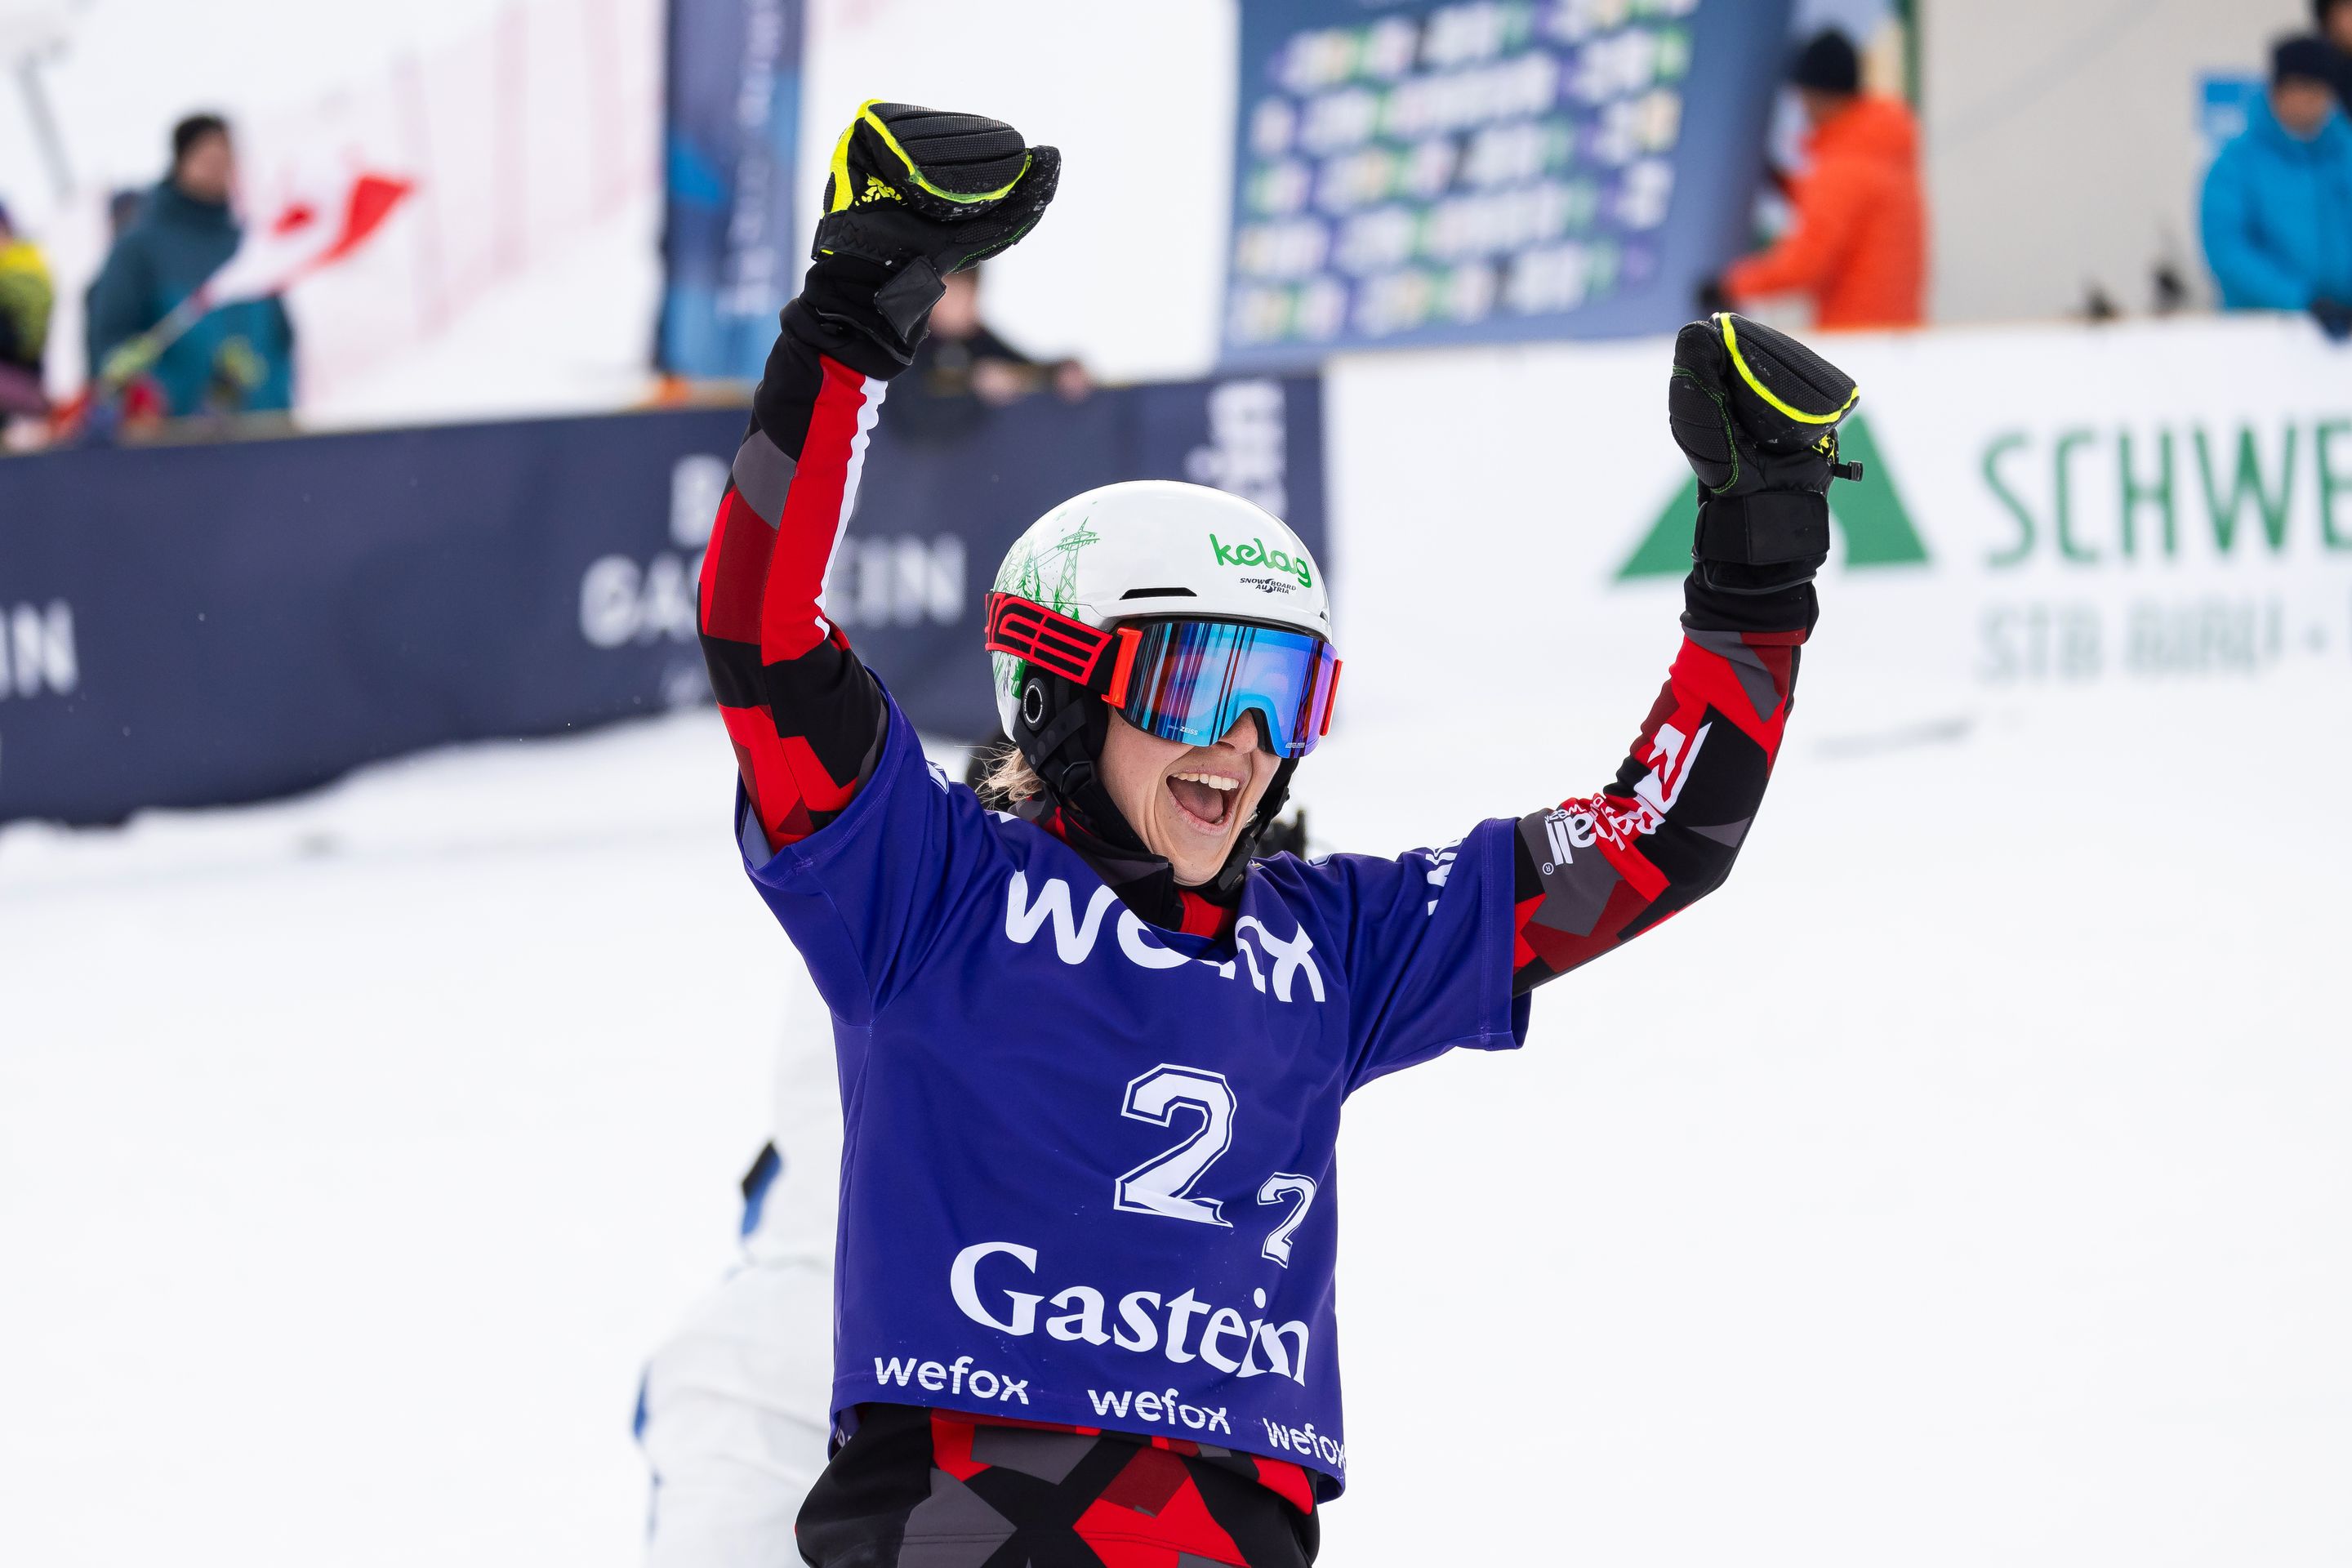 Sabine Schoeffman (AUT) celebrates her team's victory in Bad Gastein. © Miha Matavz/FIS